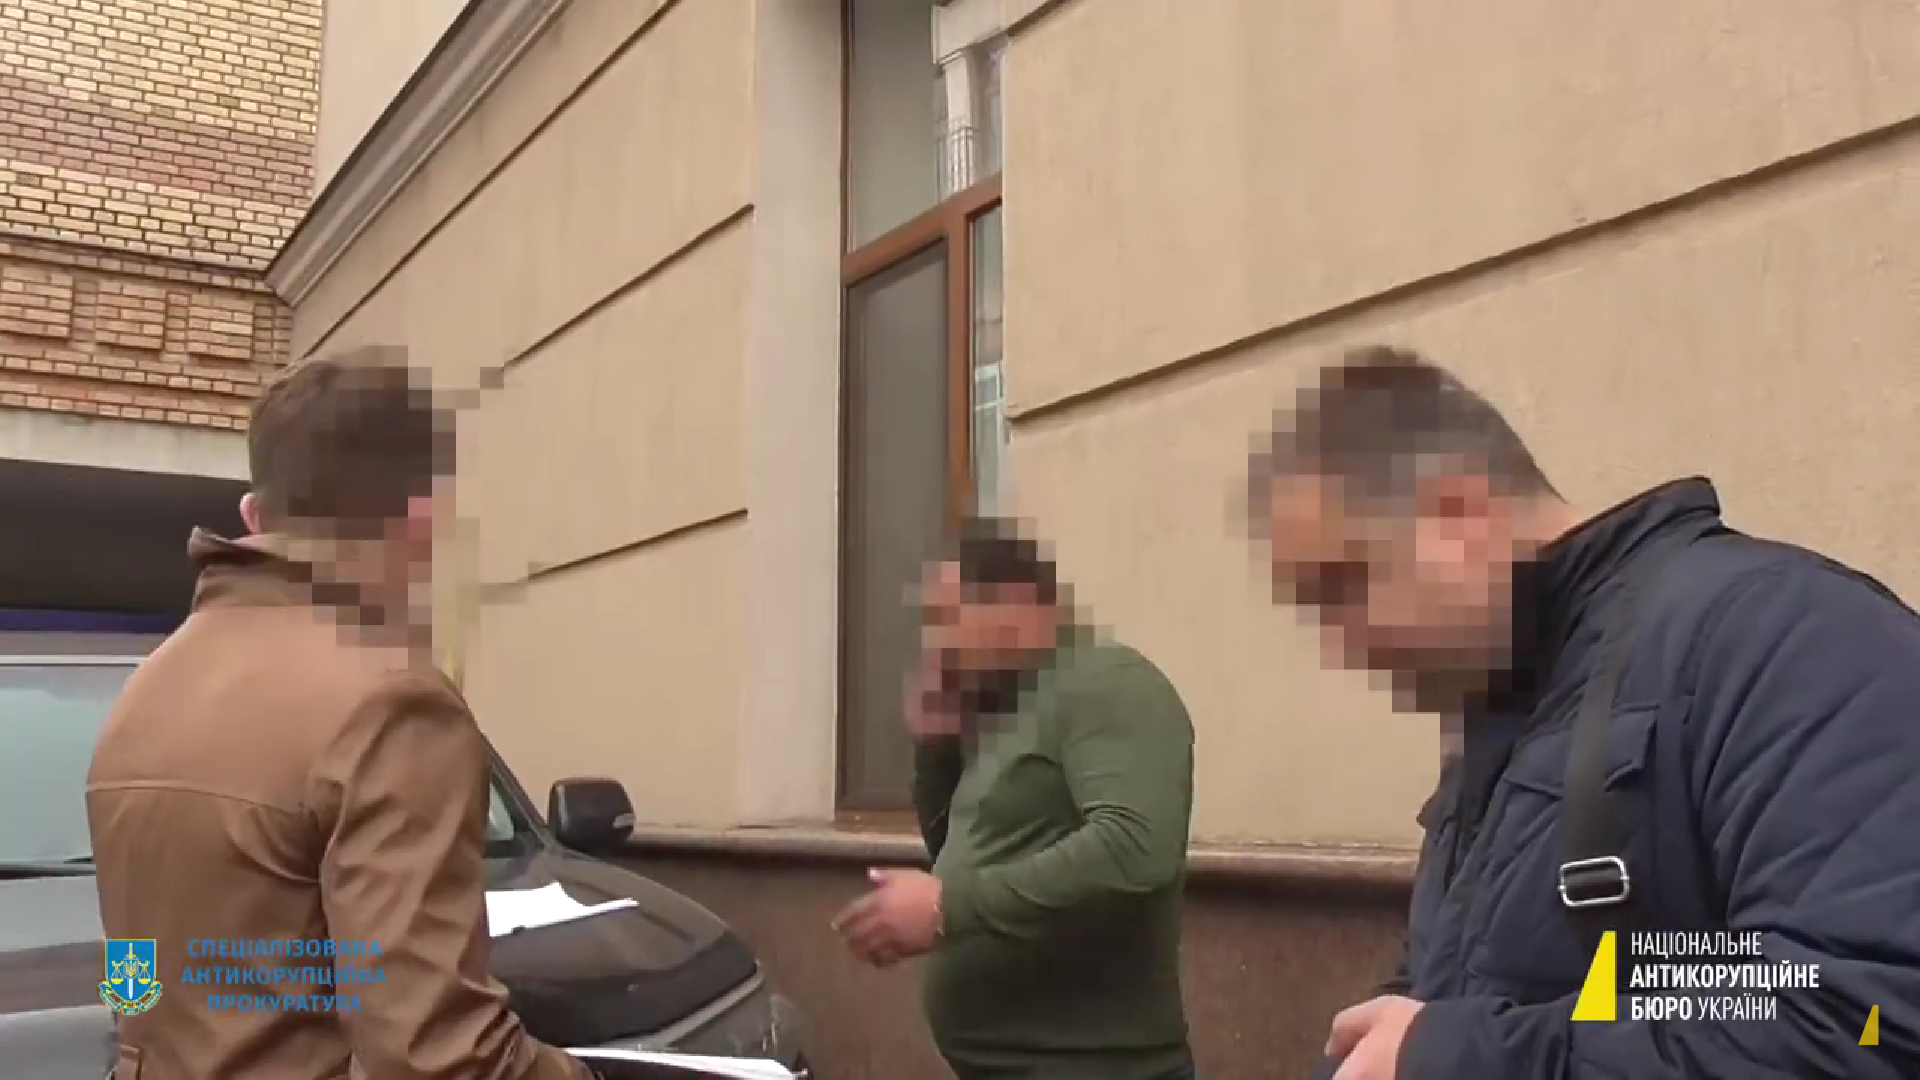 НАБУ: нардеп Кузьминых, задержанный на взятке, выбросил обвинительный акт из окна своего внедорожника. Видео